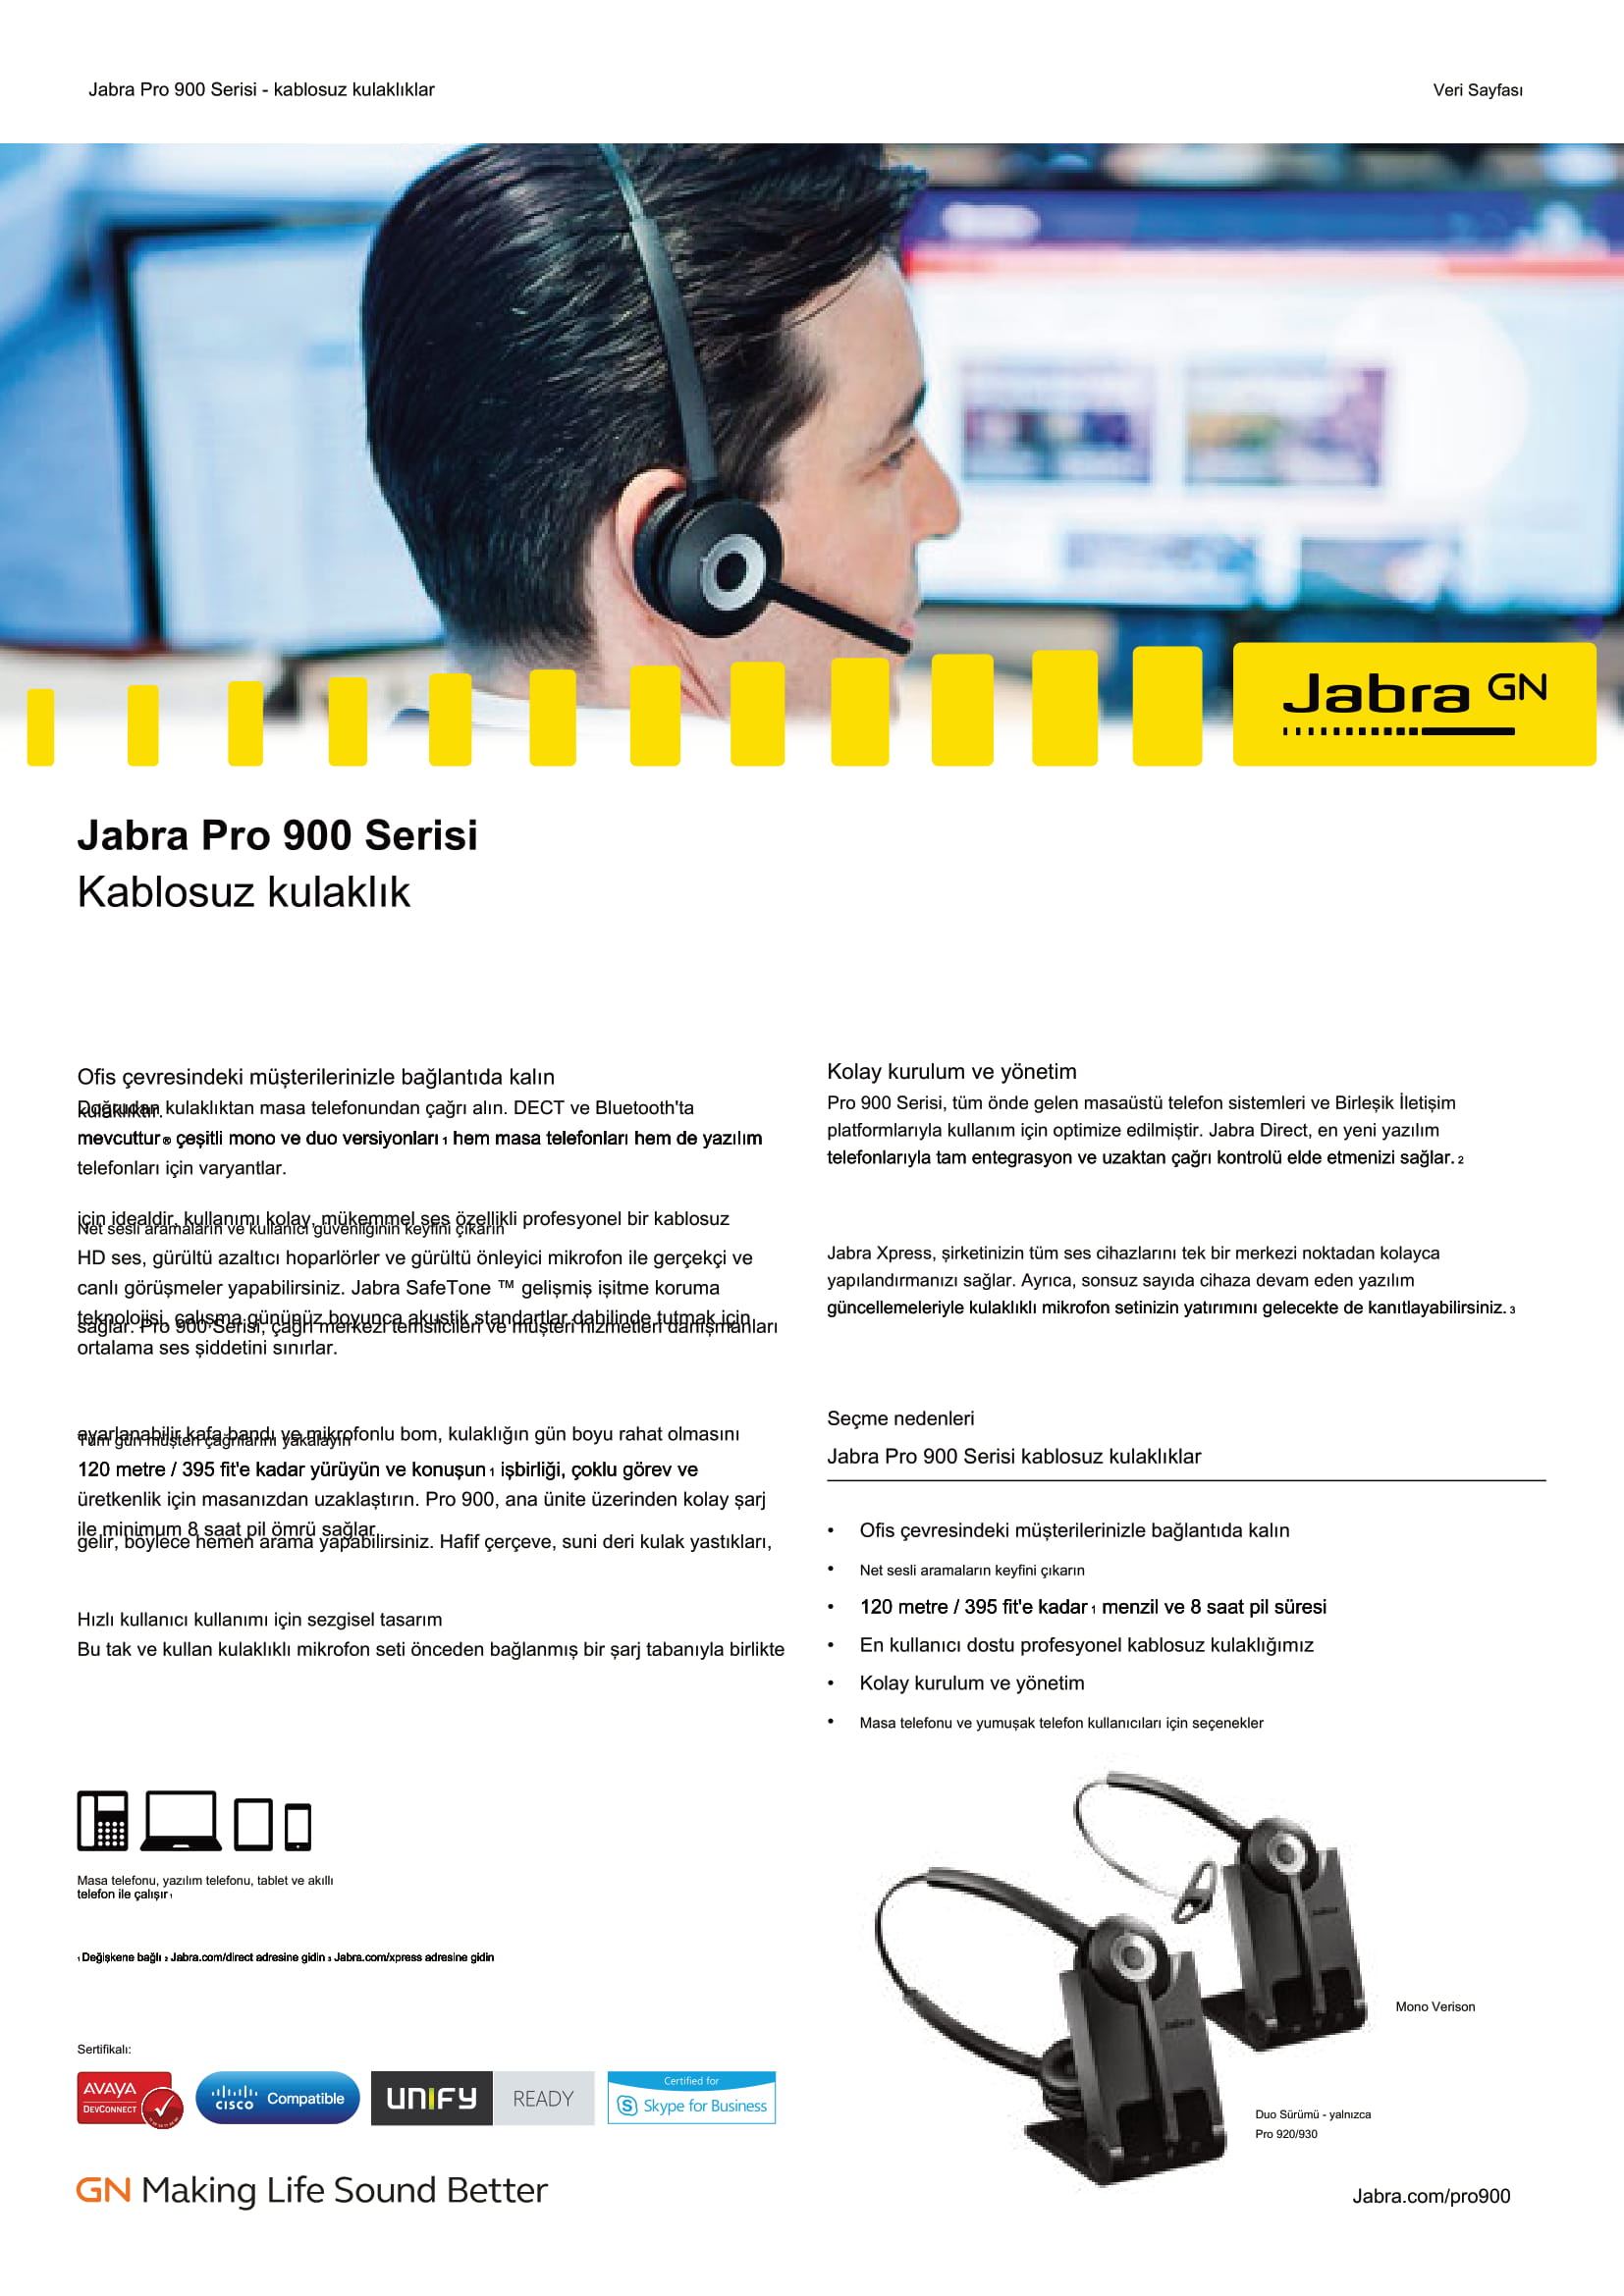 Jabra Pro 920 Mono Kulaklık Özellikleri